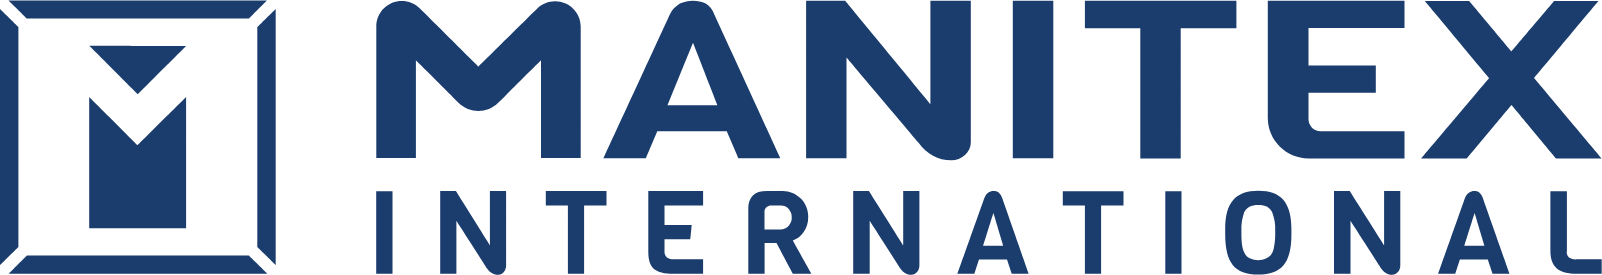 Manitex International logo large (transparent PNG)